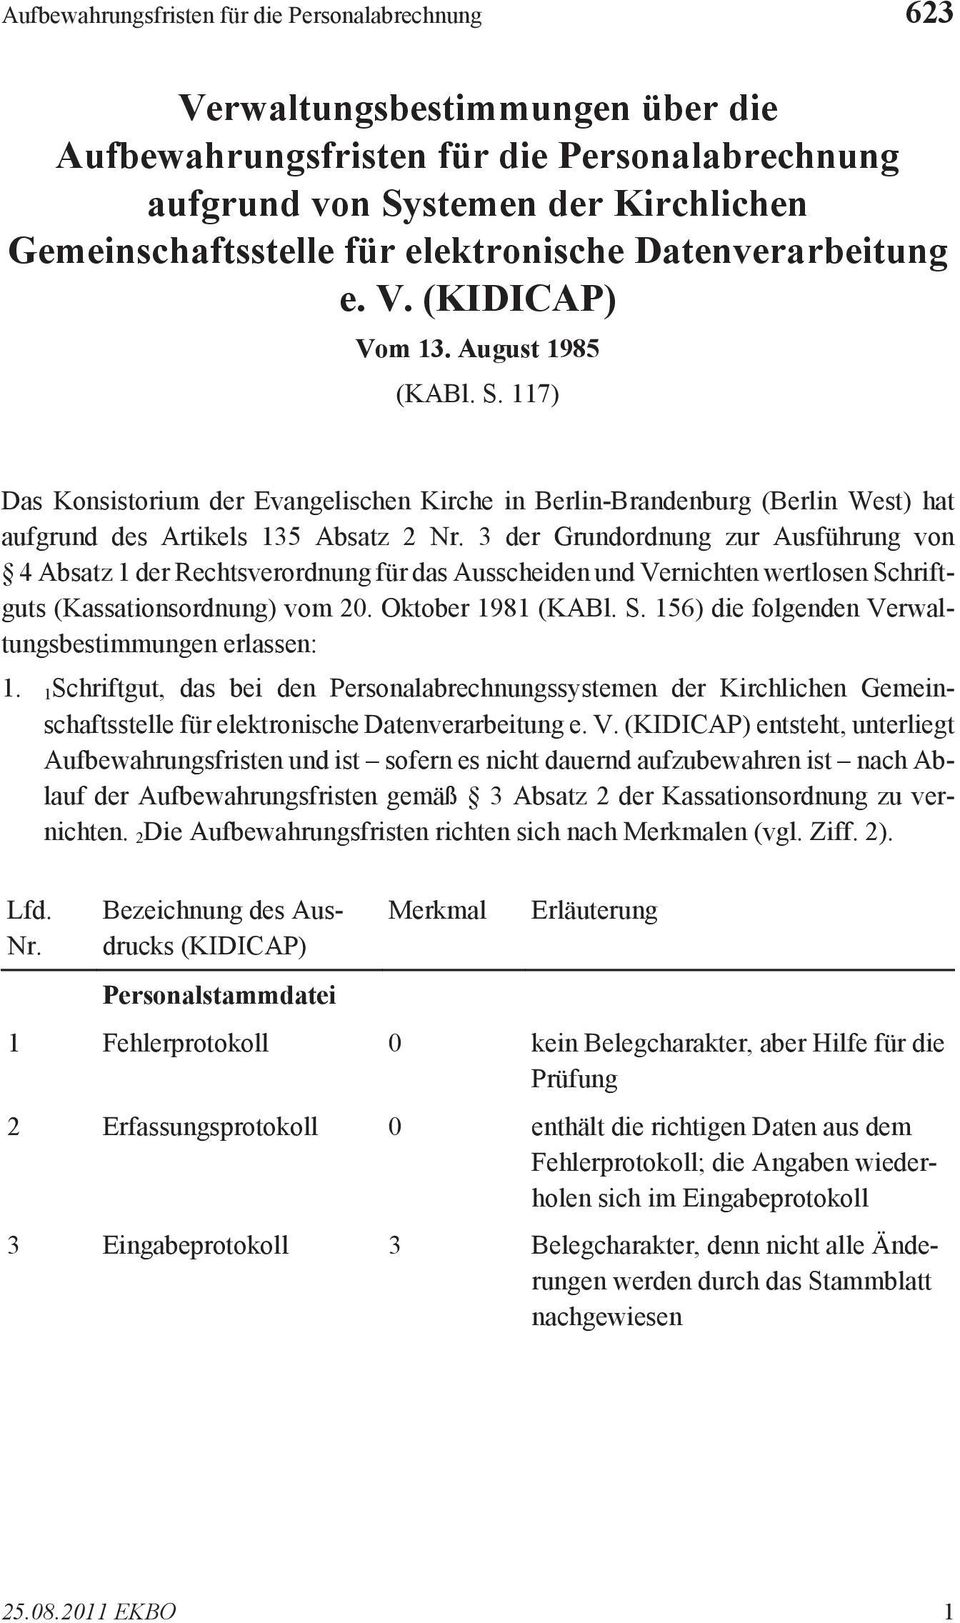 117 Das Konsistorium der Evangelischen Kirche in Berlin-Brandenburg (Berlin West hat aufgrund des Artikels 135 Absatz 2 3 der Grundordnung zur Ausführung von 4 Absatz 1 der Rechtsverordnung für das